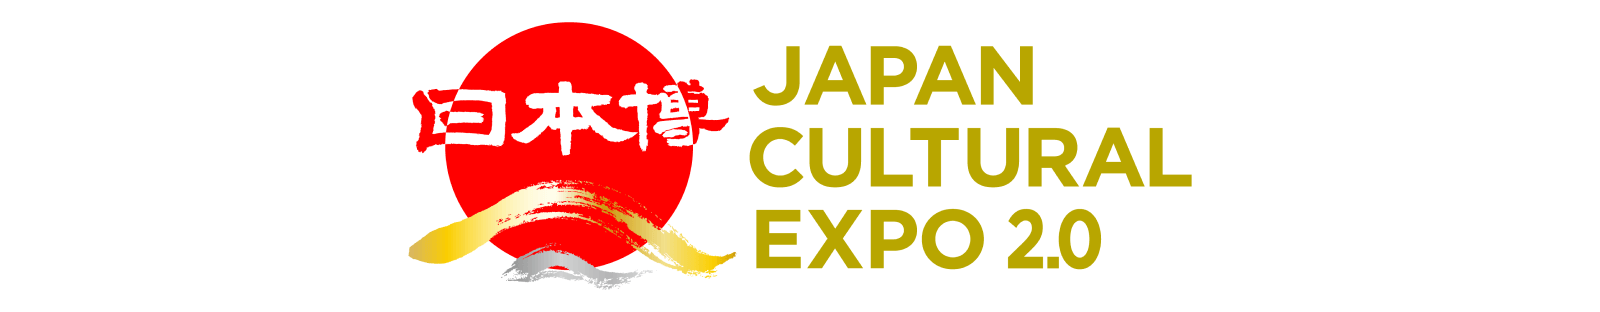 日本博 Japan Cultural Expo 2.0